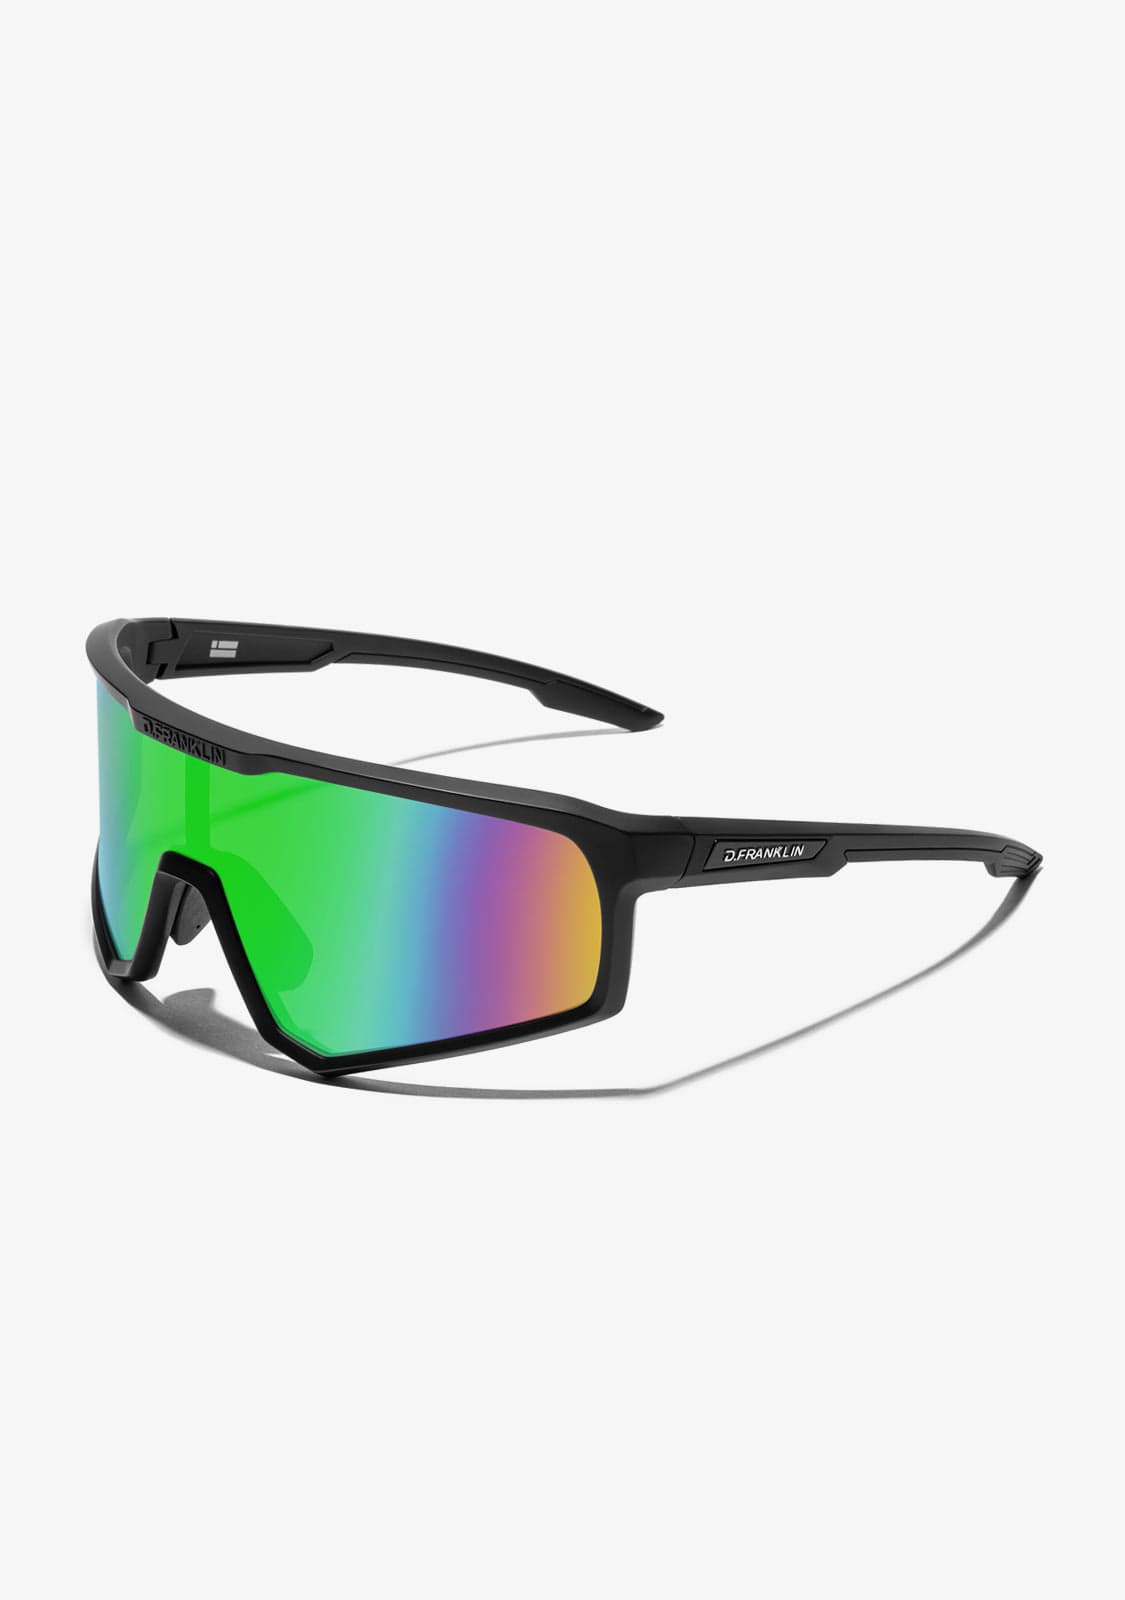 Gafas de sol deportivas de running personalizadas de moda para hombre -  China Gafas de sol de nueva moda y gafas de sol de running personalizadas  precio